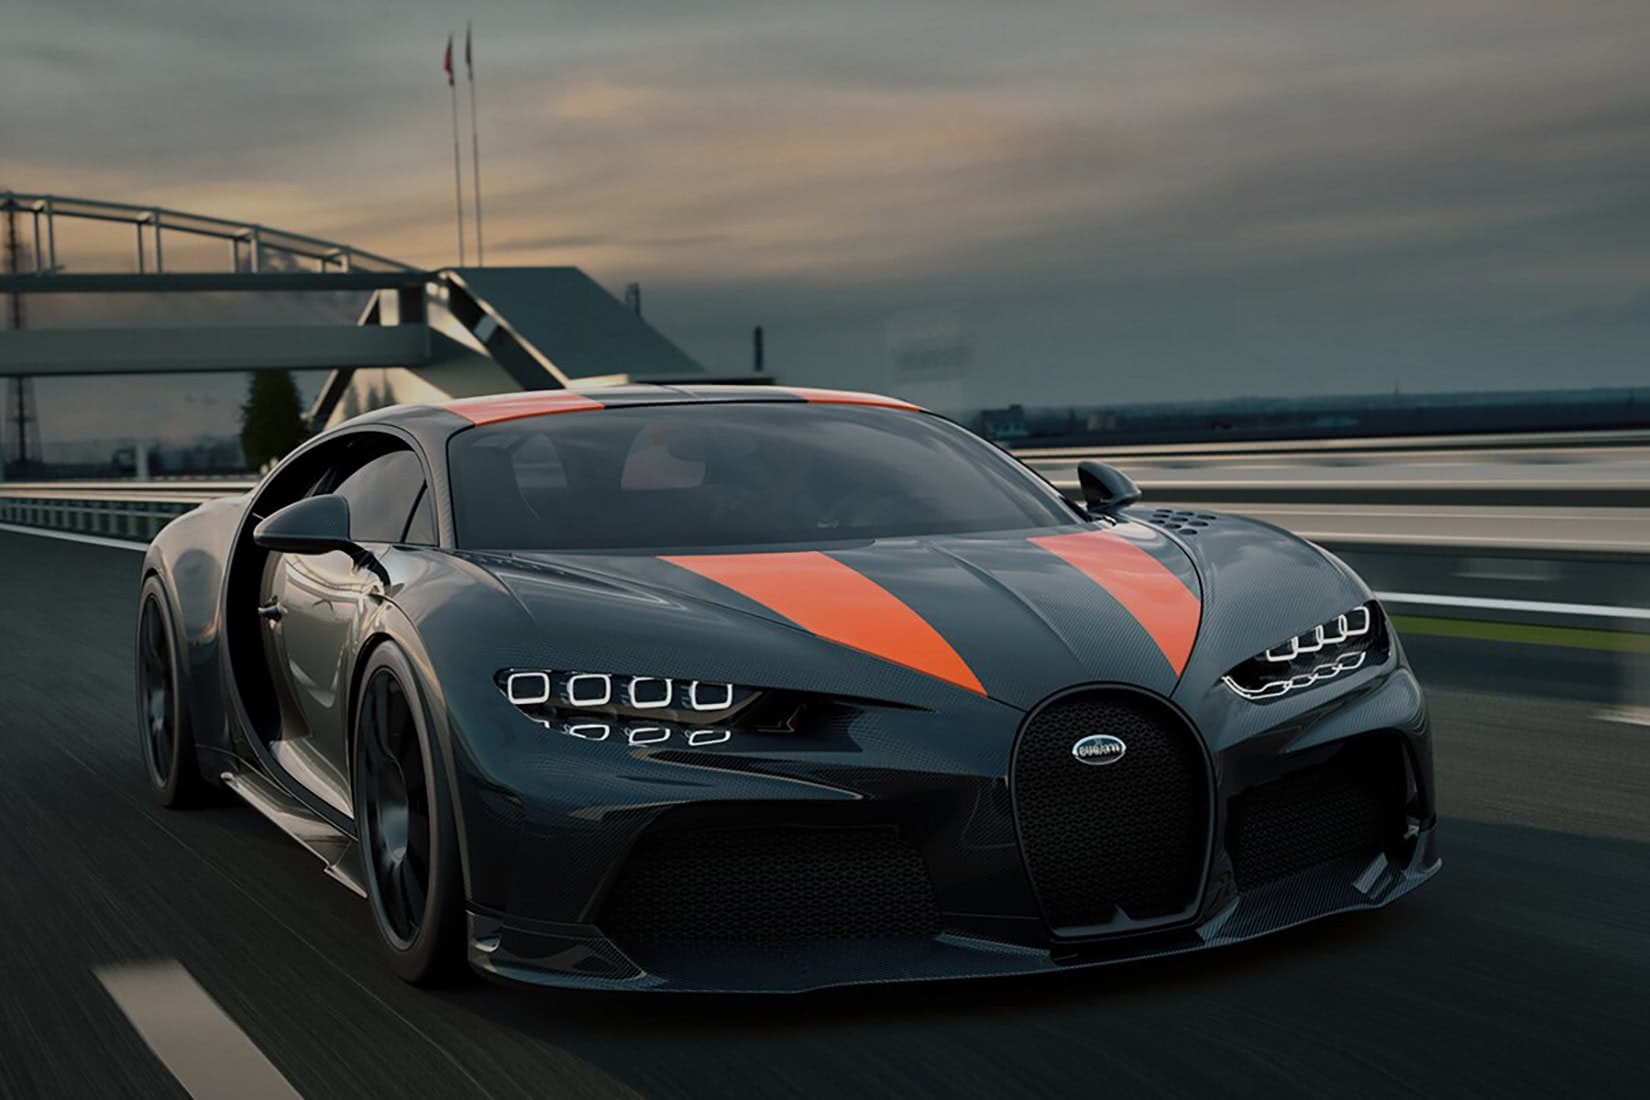 Bugatti Chiron Super Sport 300+: $5,740,000